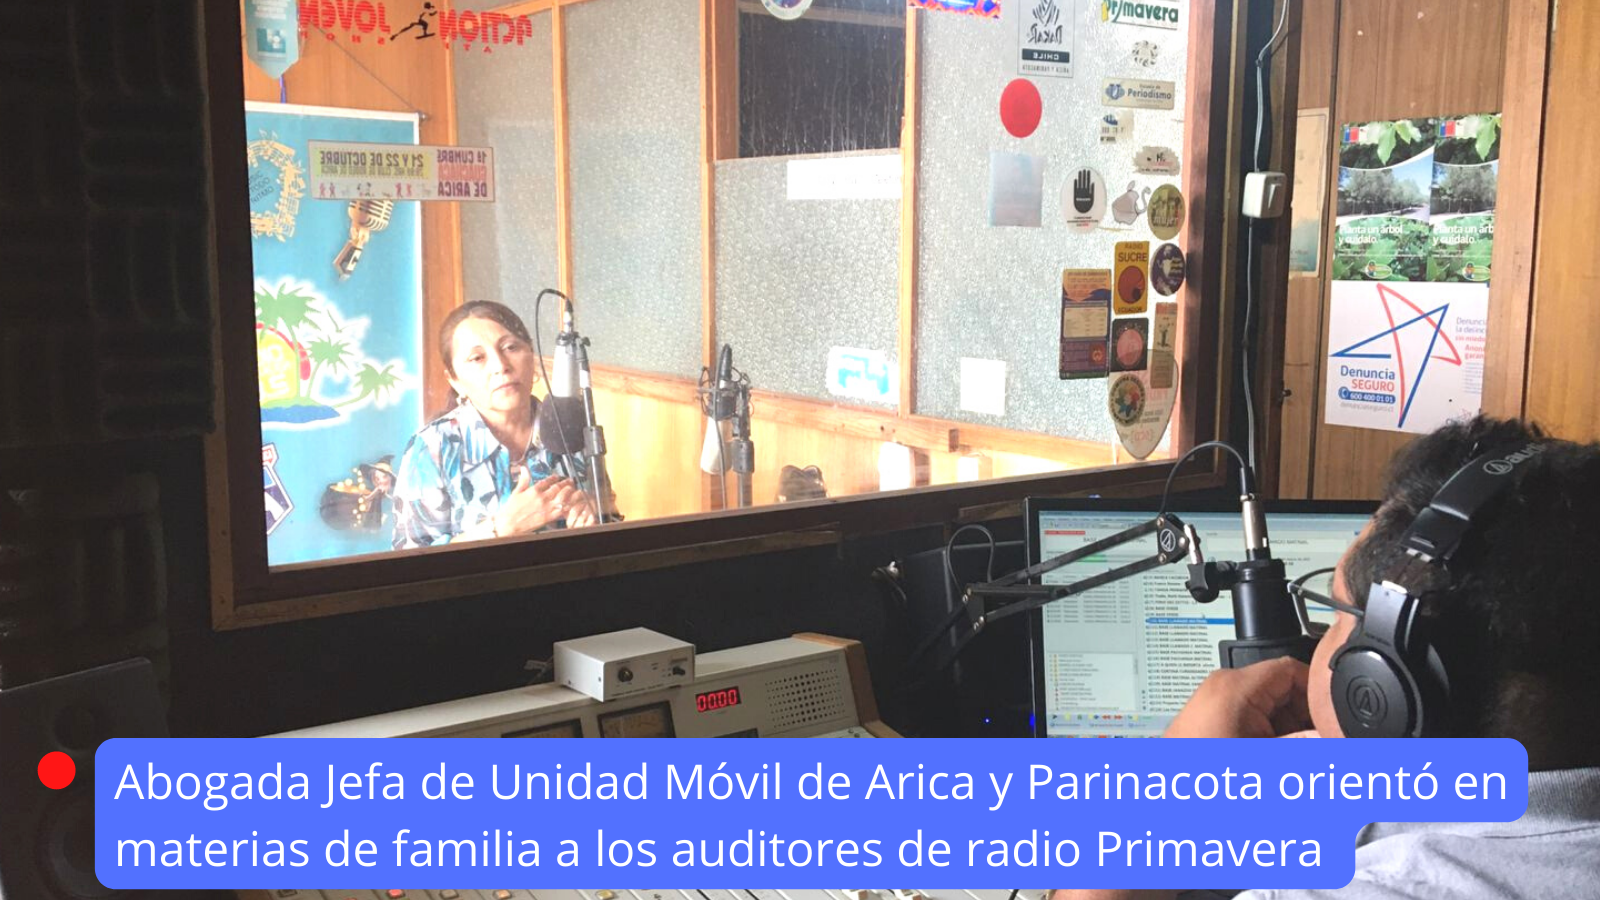 Abogada Jefa del Consultorio Móvil de Arica y Parinacota fue entrevistada en radio Primavera